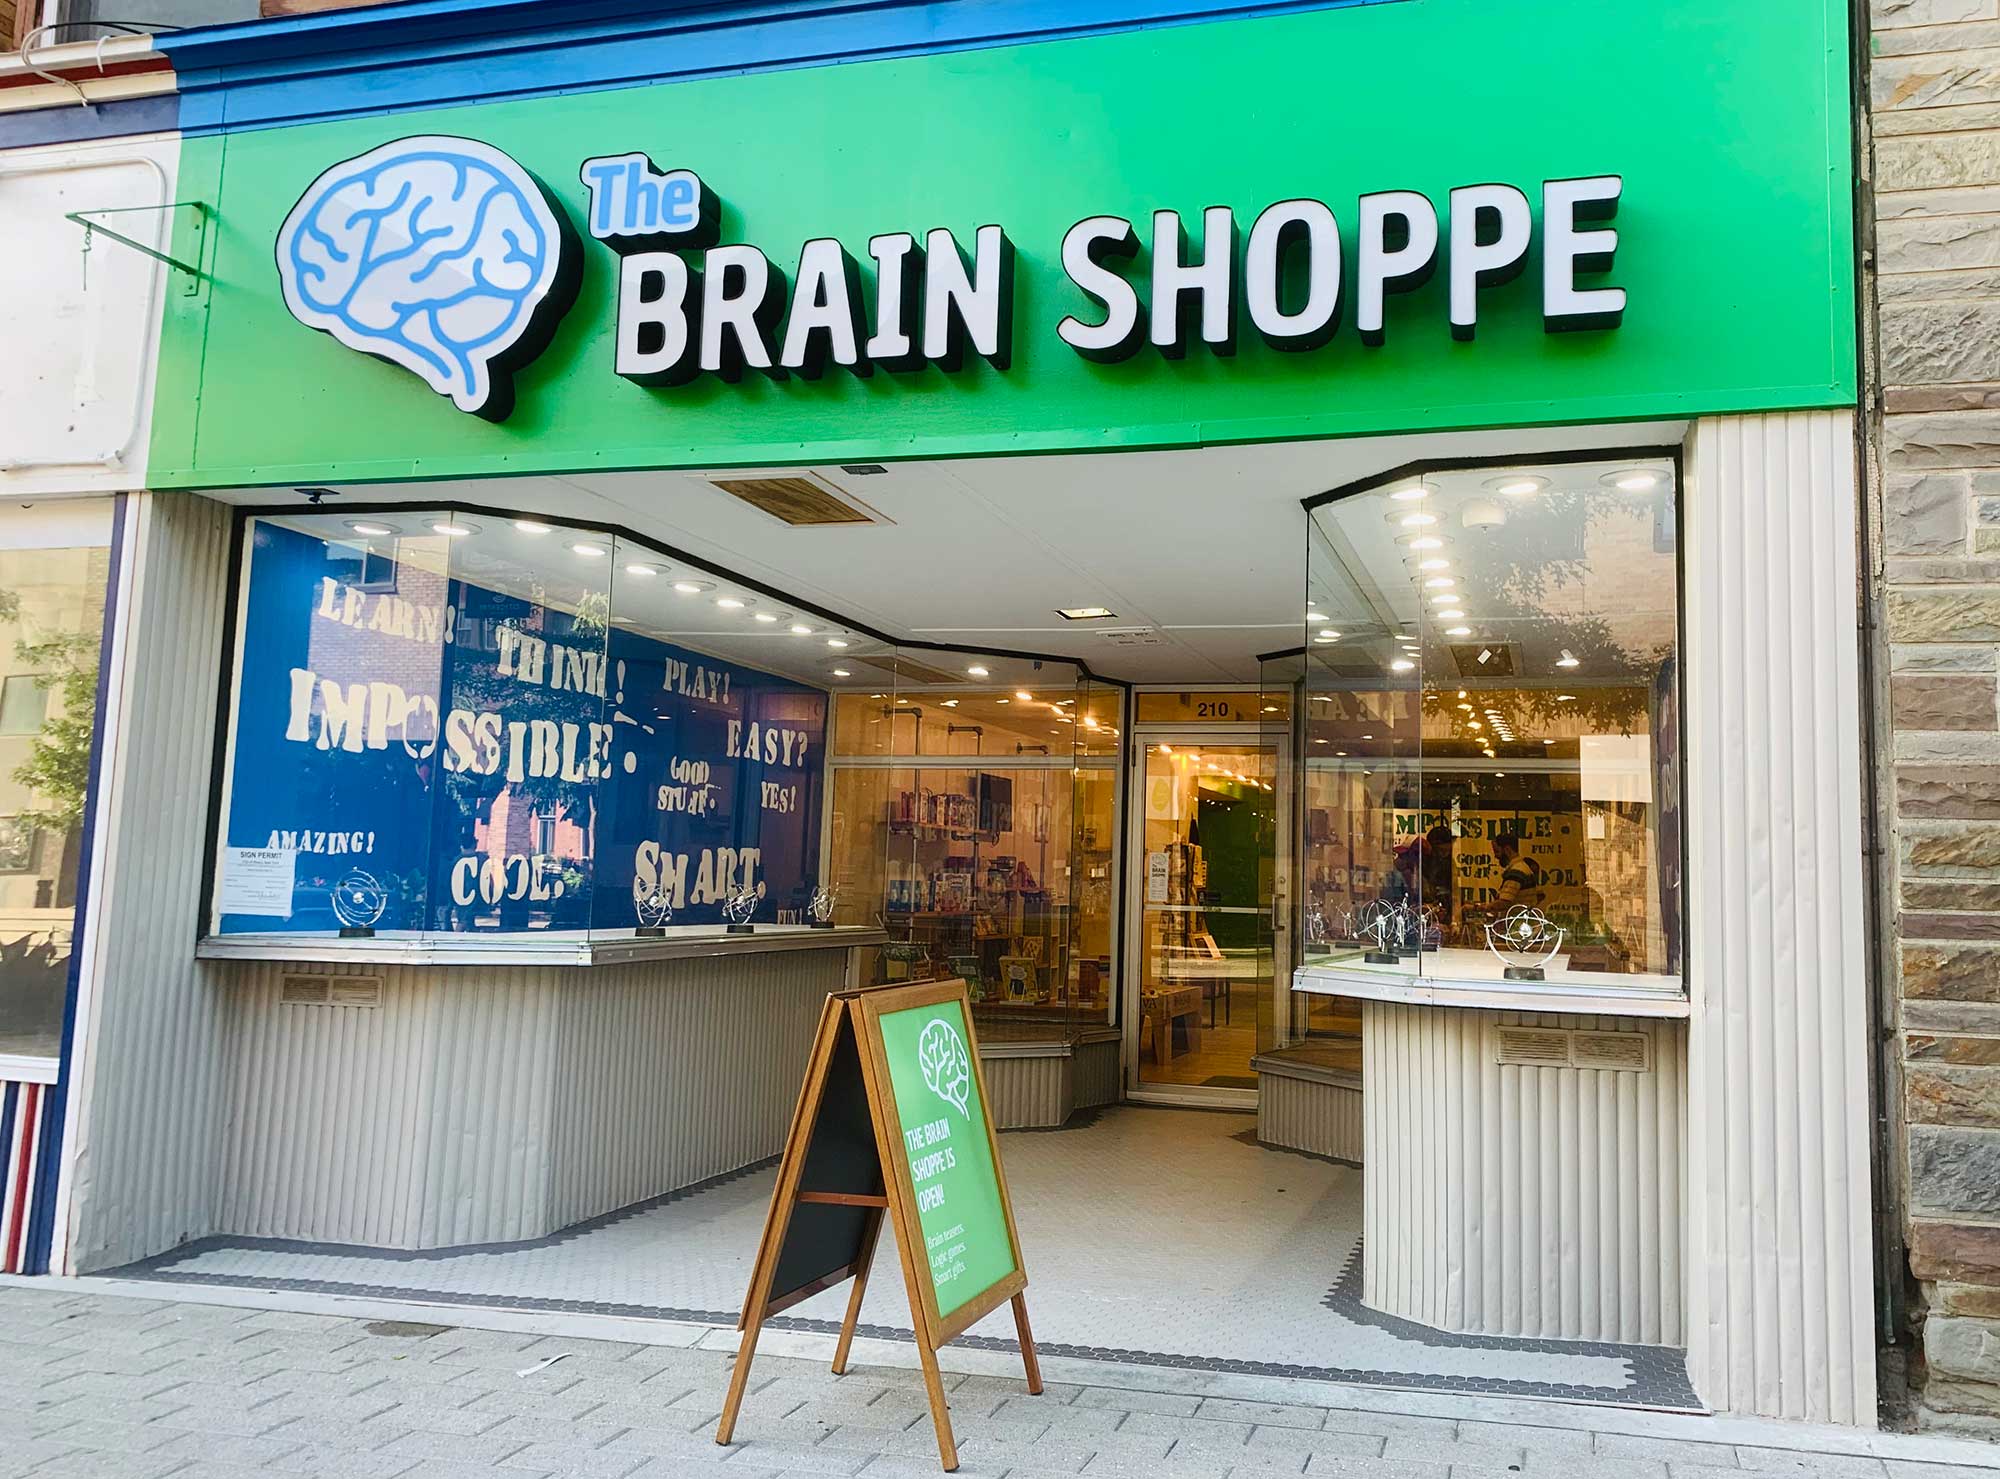 The Brain Shoppe